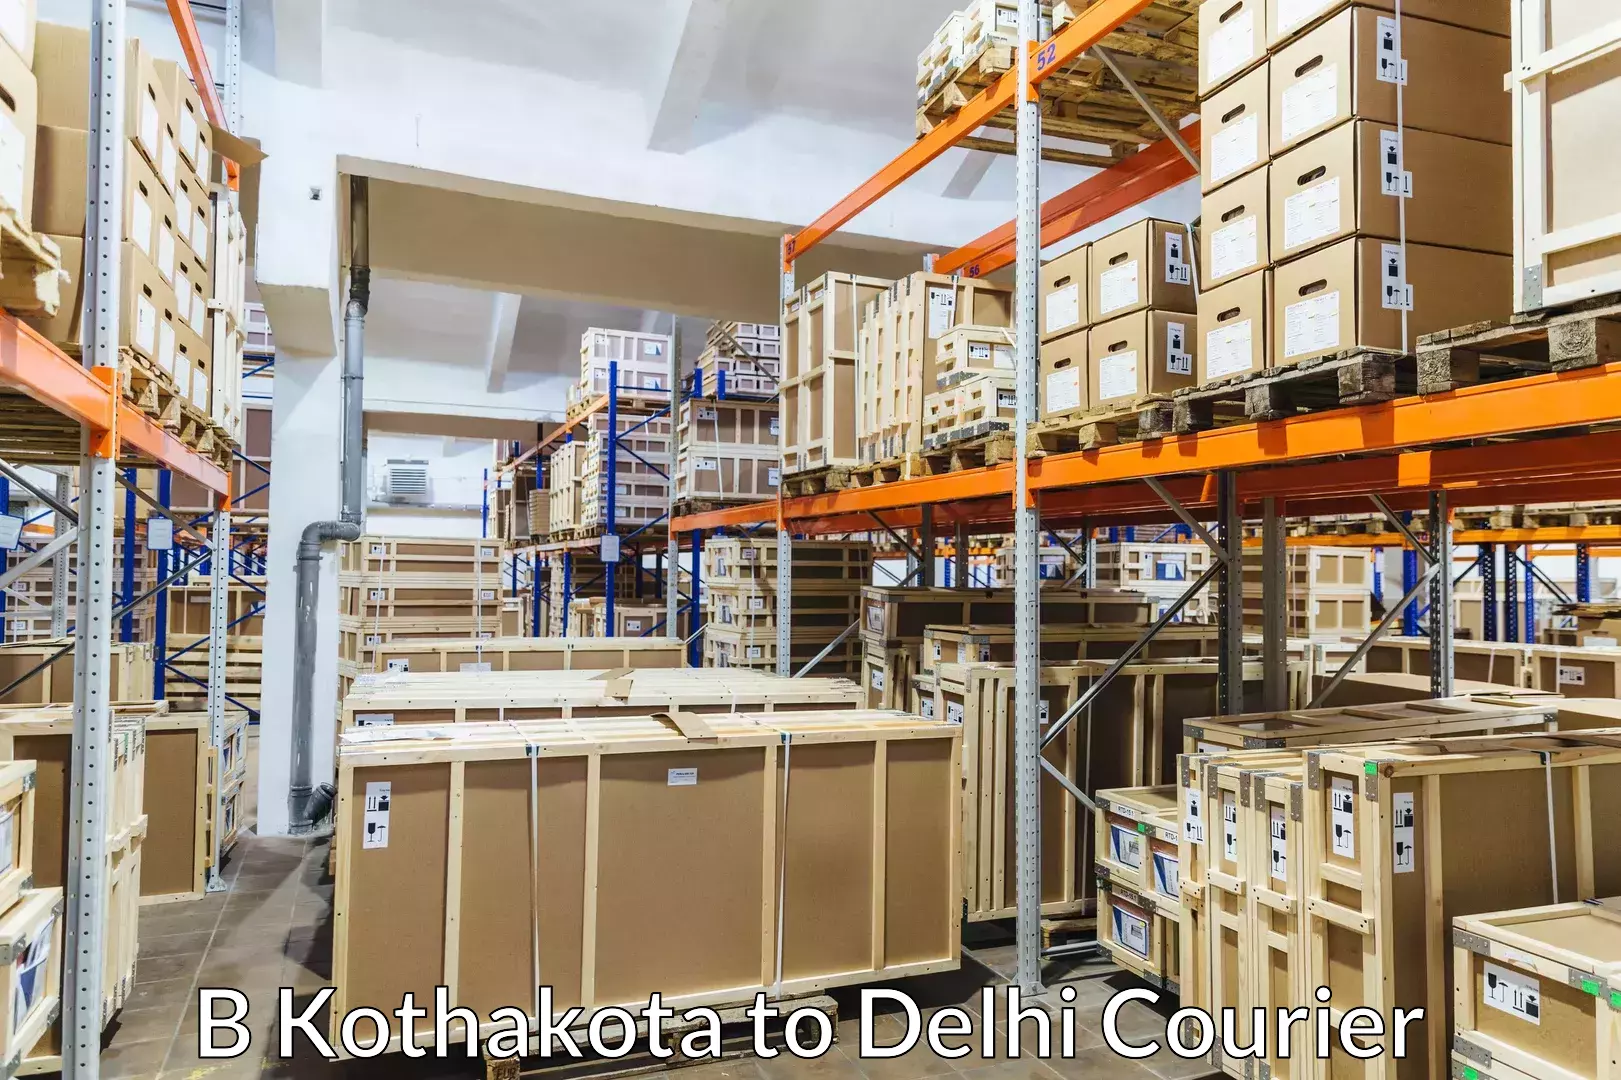 Professional packing services B Kothakota to Sarojini Nagar